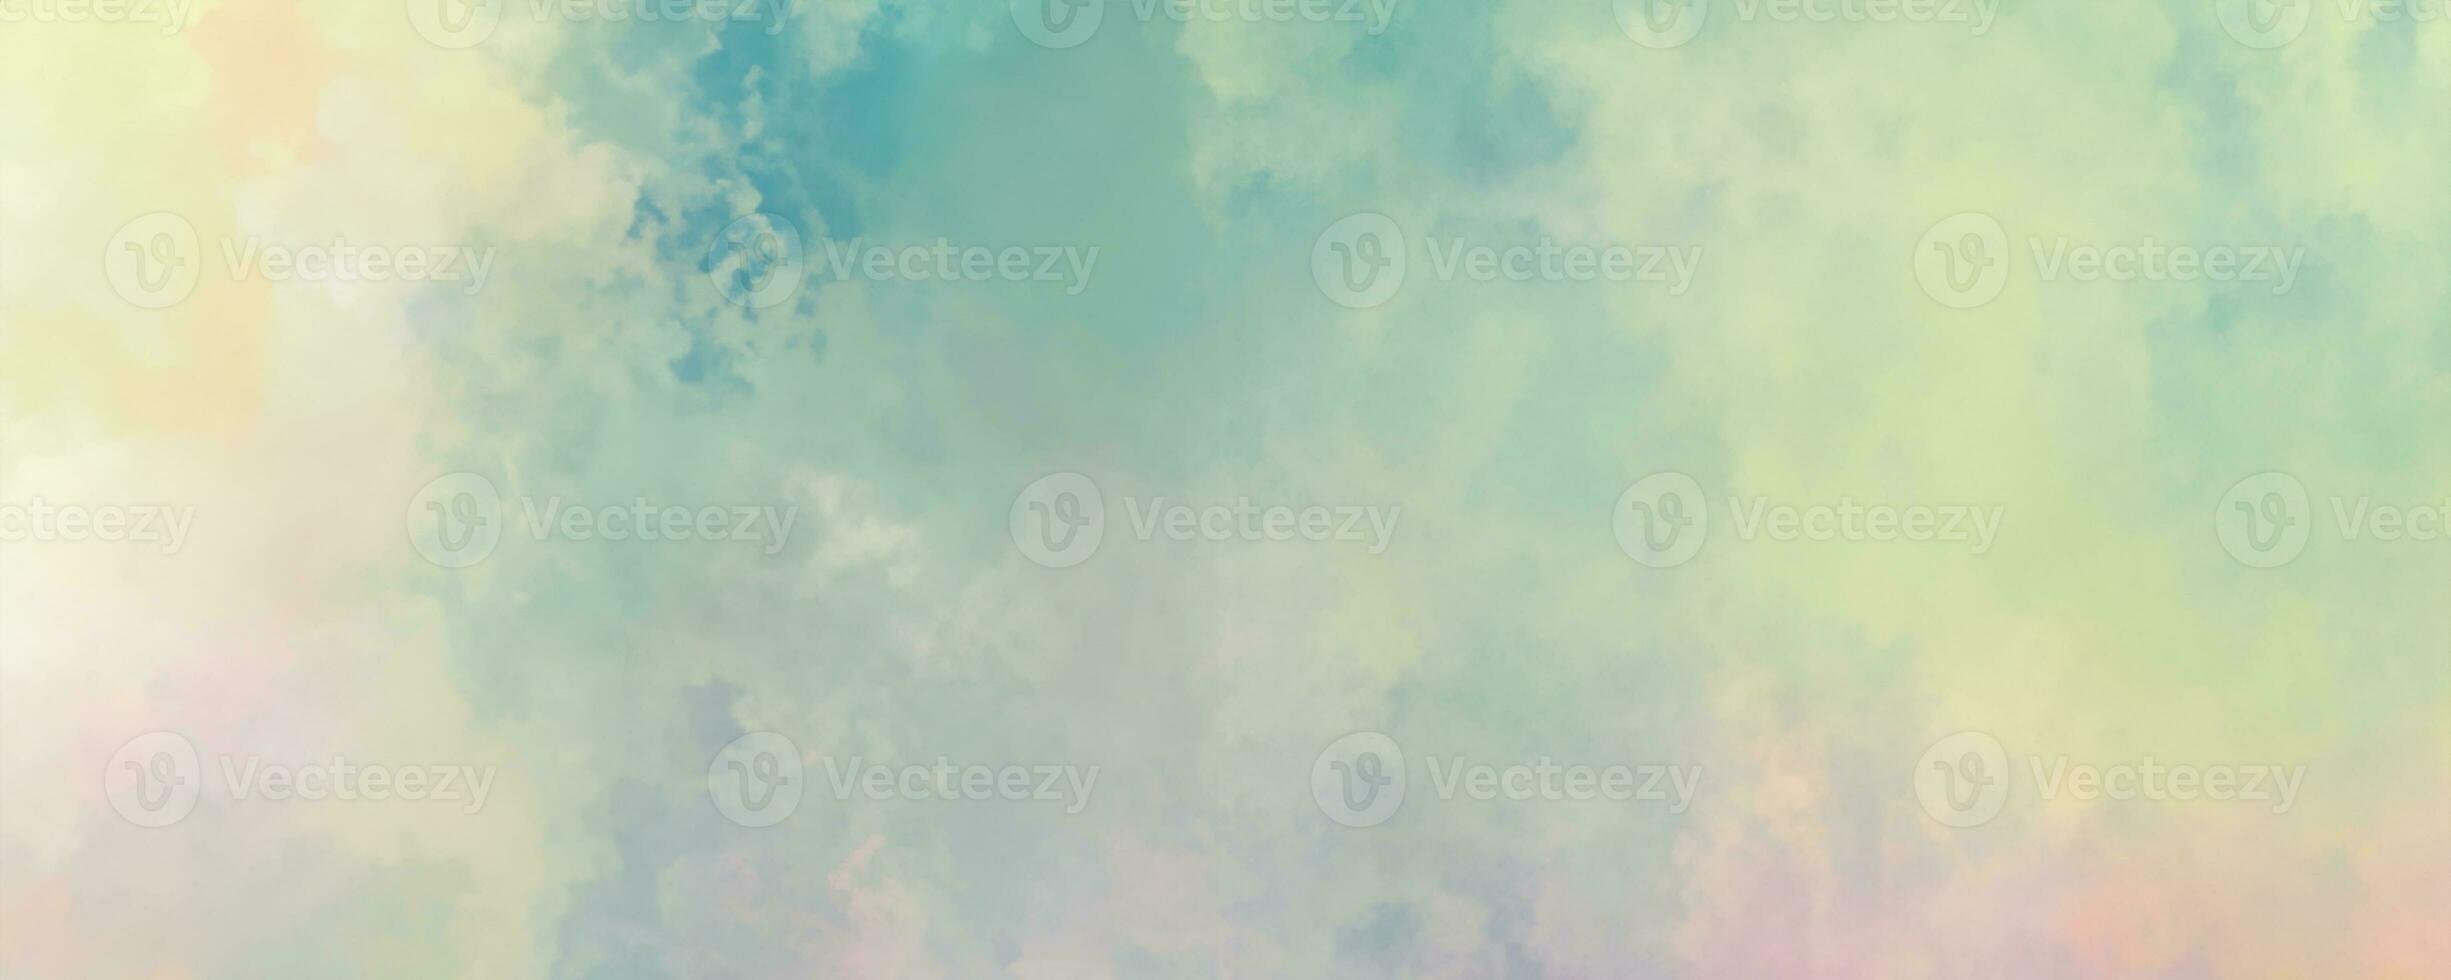 abstrakt bunt hell gemalt Textur von Aquarell mit Licht Farben. bunt wolkig hell gemalt Aquarell Hintergrund mit Aquarell Wirkung, bunt Aquarell Hintergrund mit Spritzer. foto